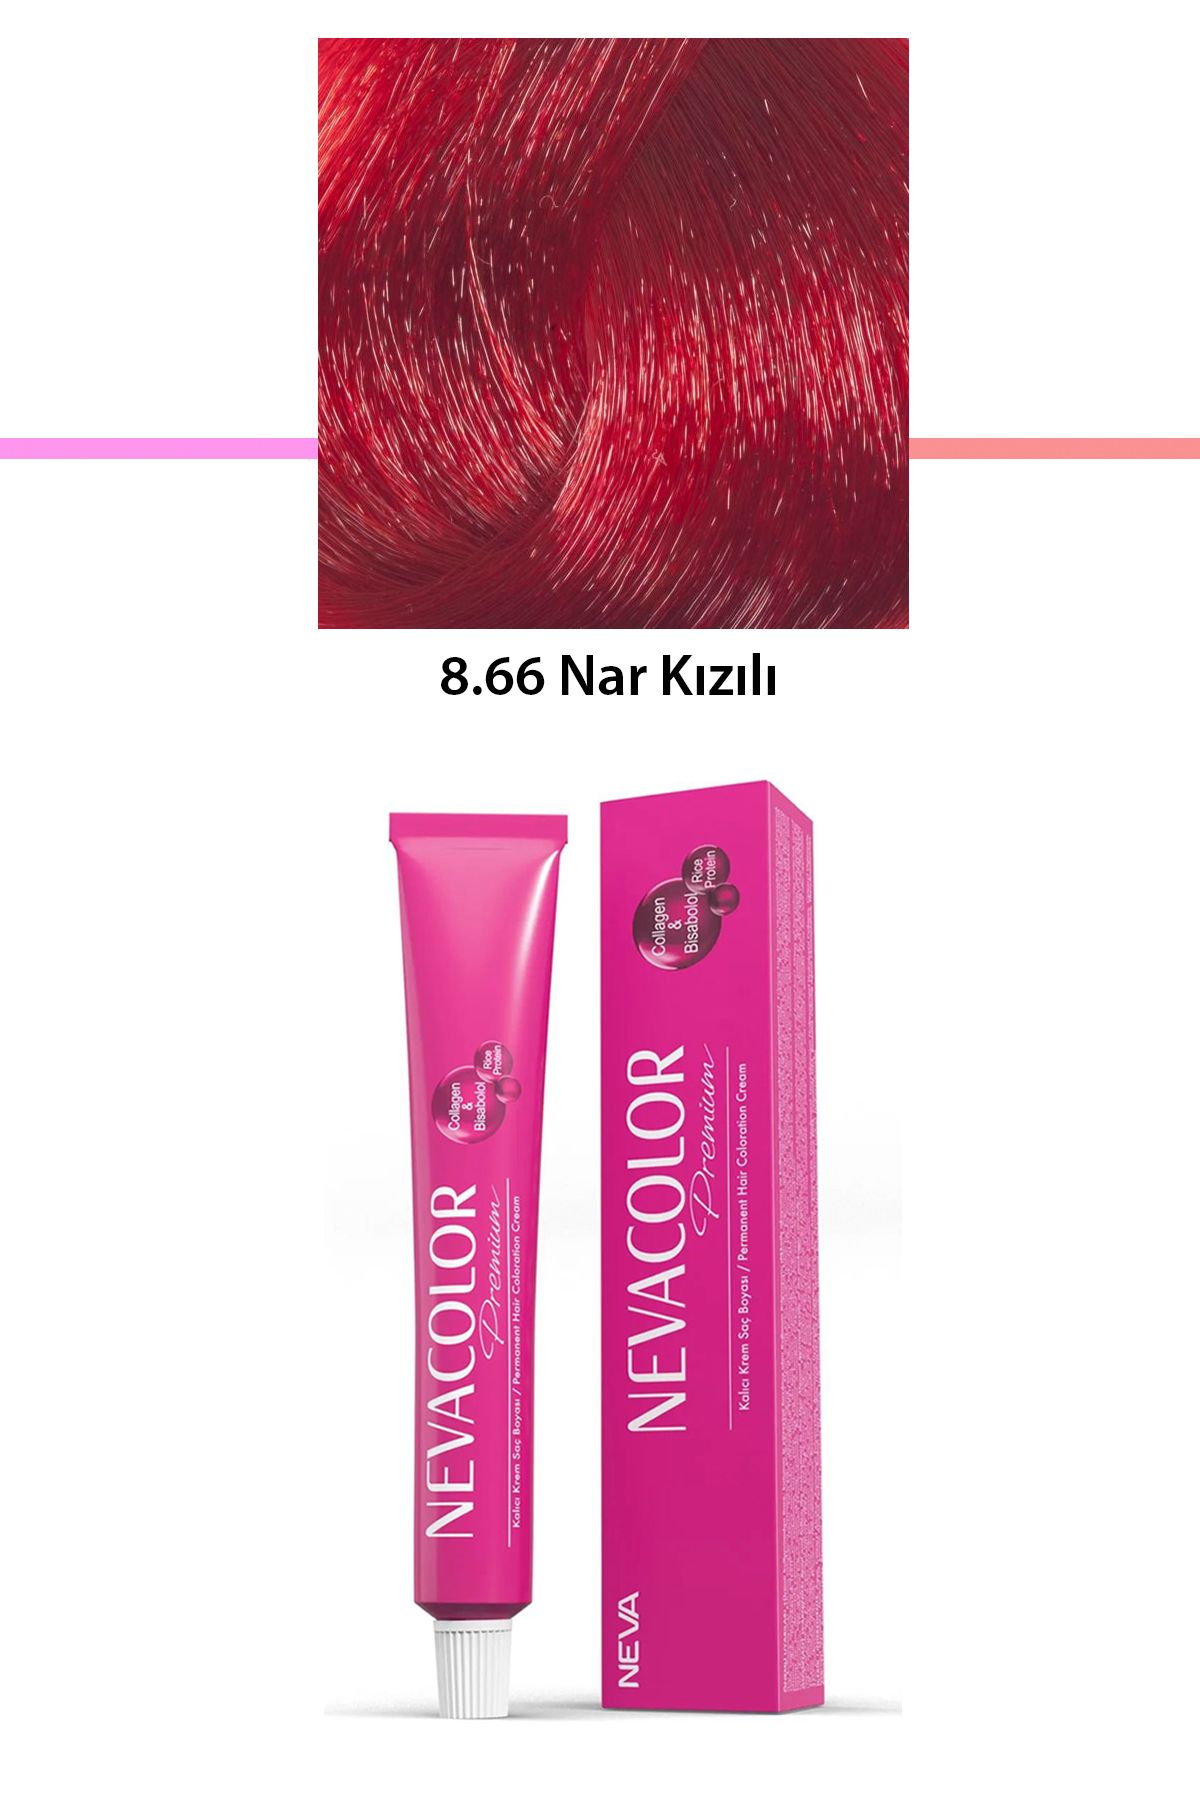 Neva Color Premium 8.66 Nar Kızılı - Kalıcı Krem Saç Boyası 50 g Tüp